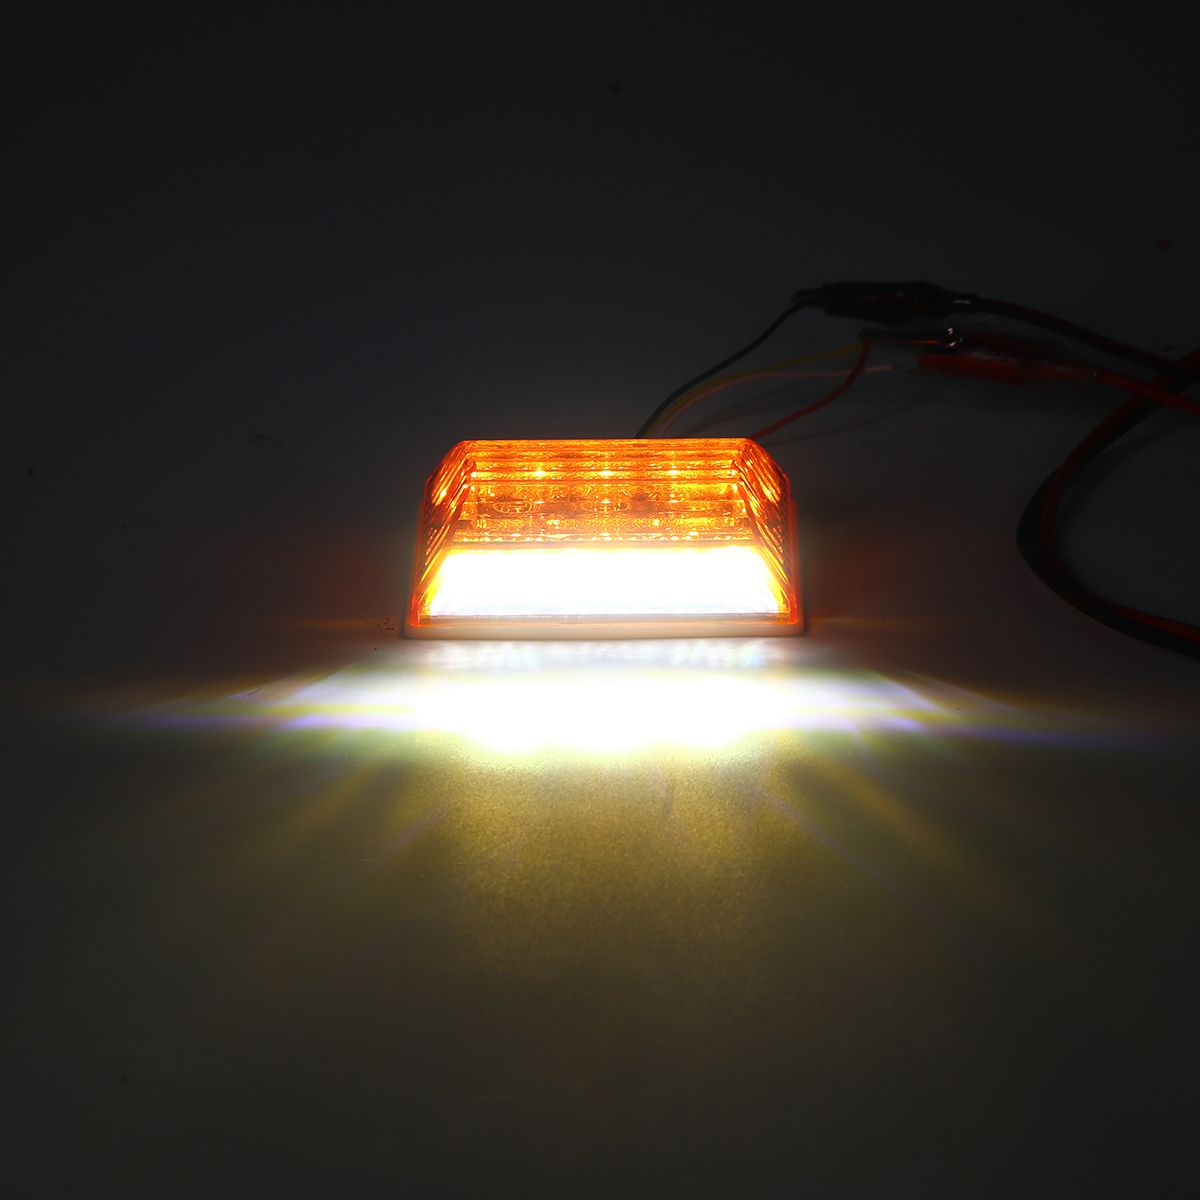 LED-Side-Marker-Lights-Indicator-Lamps-24V-6500K-White-2PCS-for-Truck-Van-Pickup-Trailer-1426552